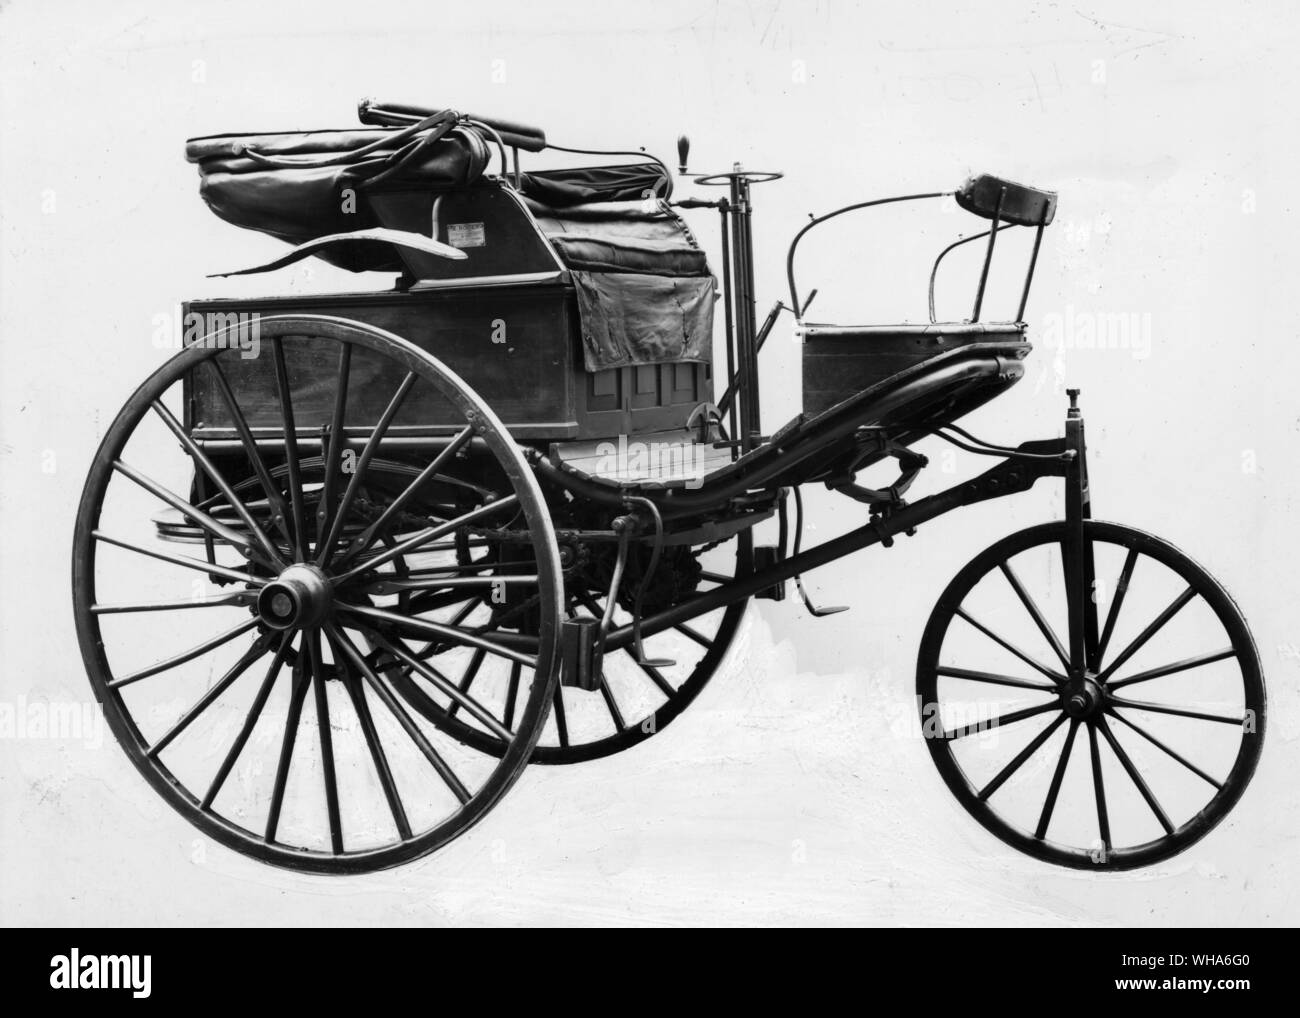 Benz Motor Car 1888. Eine dreirädrige Fahrzeug mit einer horizontalen 1-Zylinder Motor von Carl Benz. Dieses Beispiel ist wahrscheinlich die erste Benziner in England Stockfoto